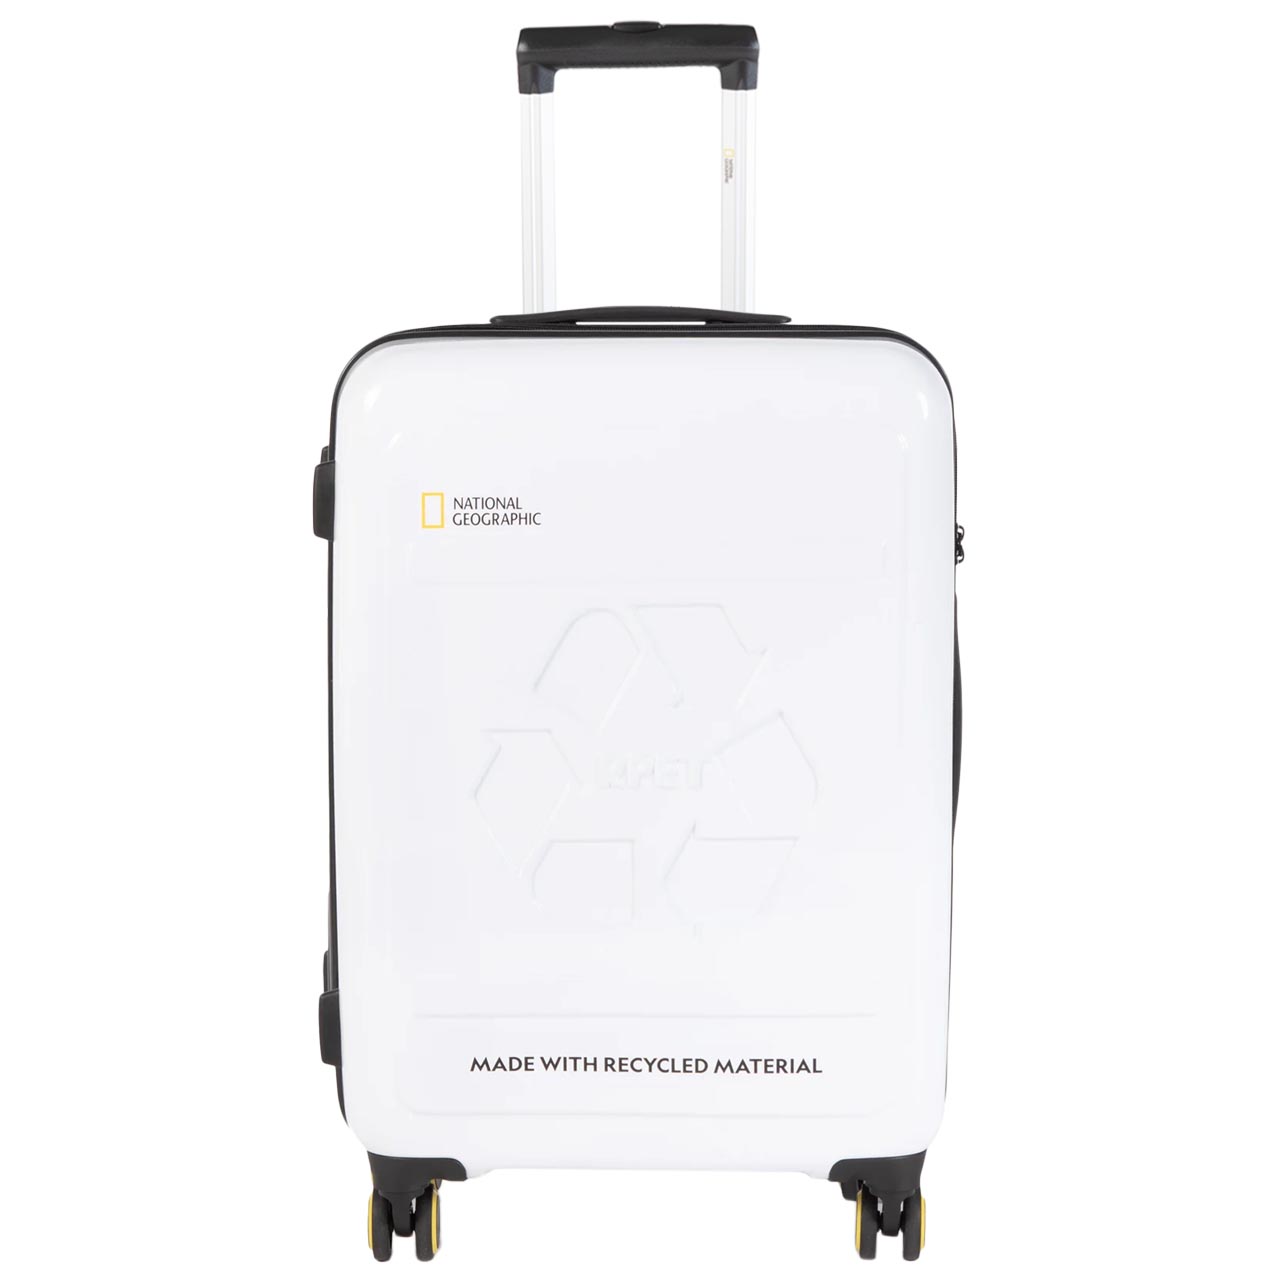 نکته خرید - قیمت روز چمدان نشنال جئوگرافیک مدل متوسط N205 REPET BALANCE خرید